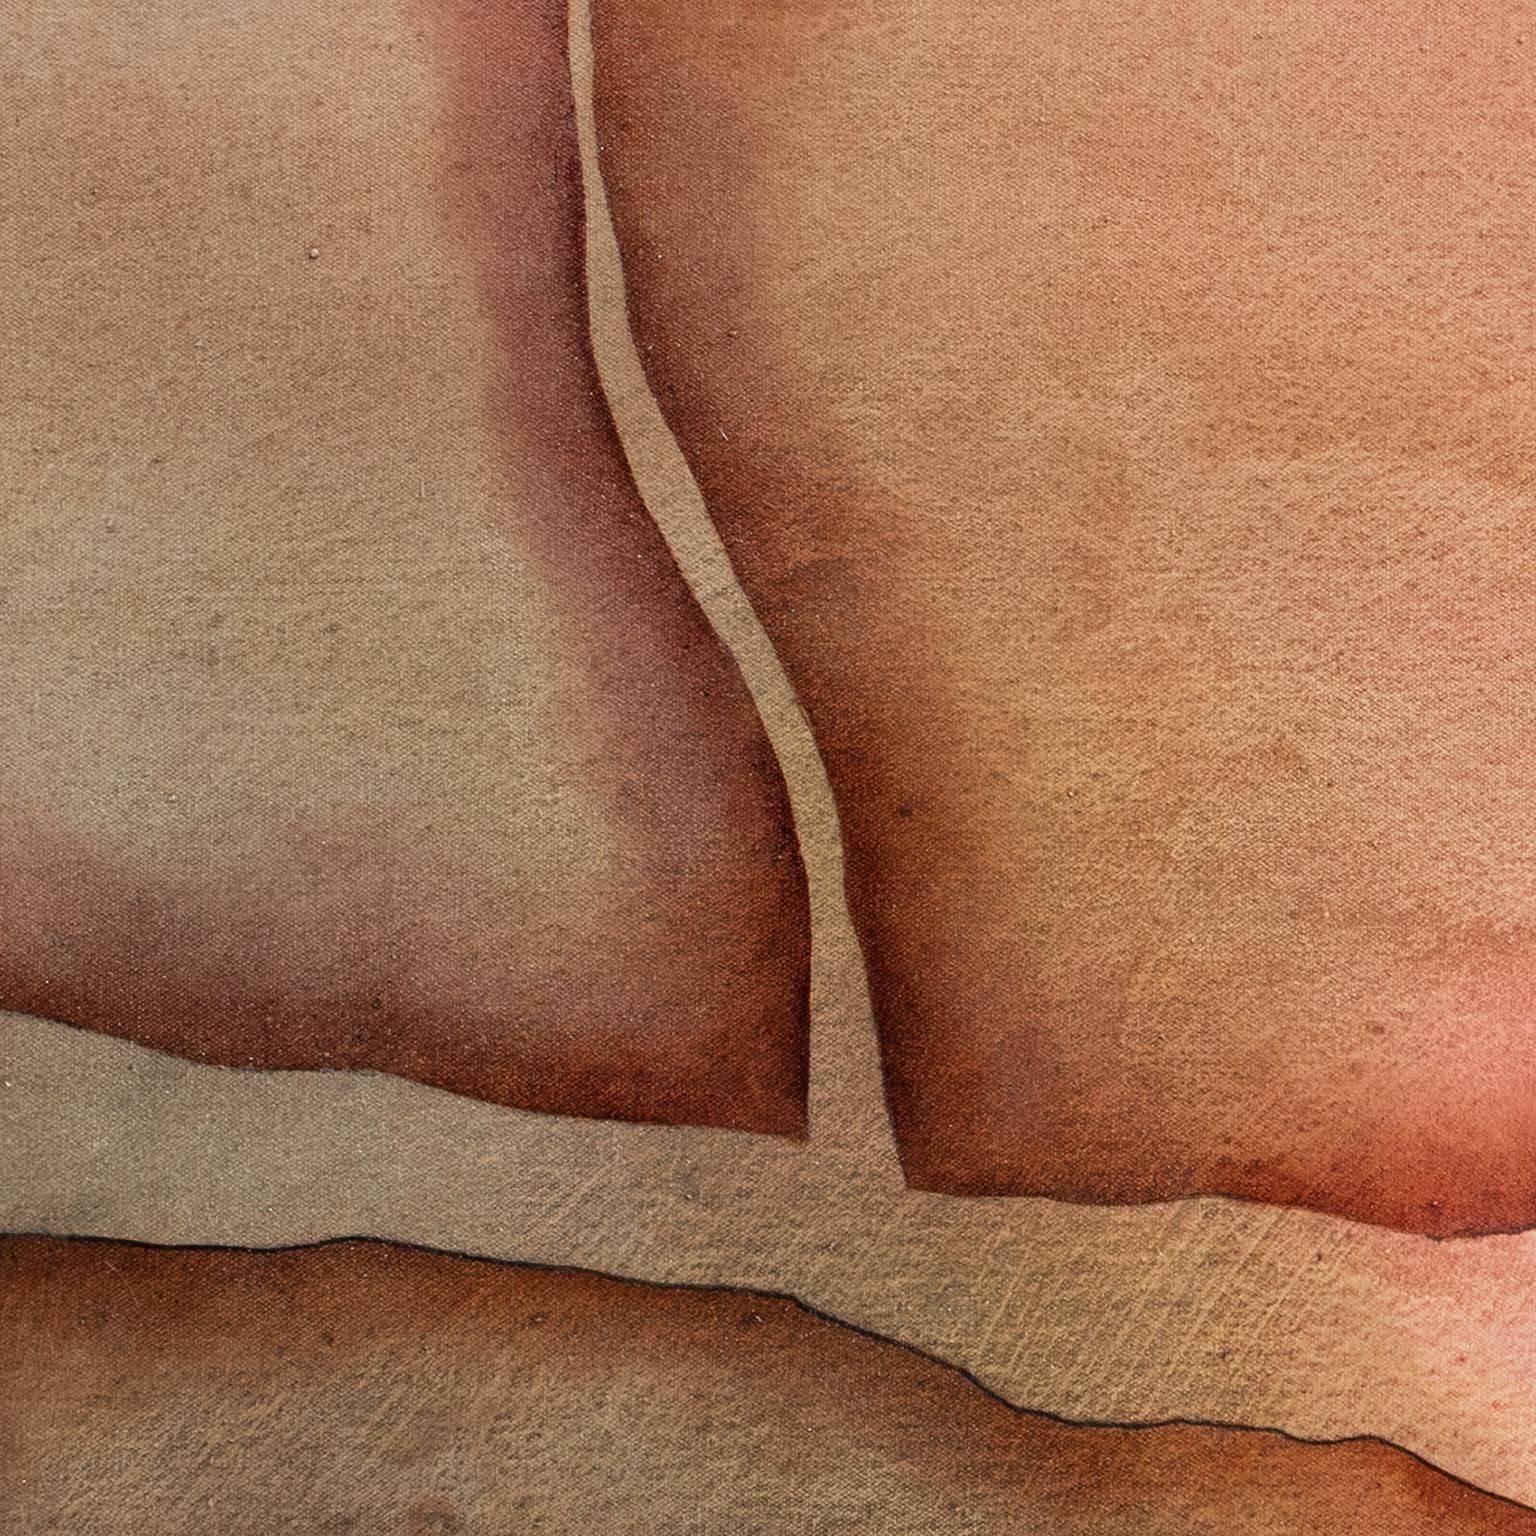 Gian Berto Vannis Sommerhitze ist ein 38 x 73 Zoll großes abstraktes Landschafts-Ölgemälde.  Die Hauptfarben sind lila, rosa und rot.
Die Komposition erweckt ein Bild zum Leben, das an geologische Formationen erinnert, wie man sie in Wüsten findet,